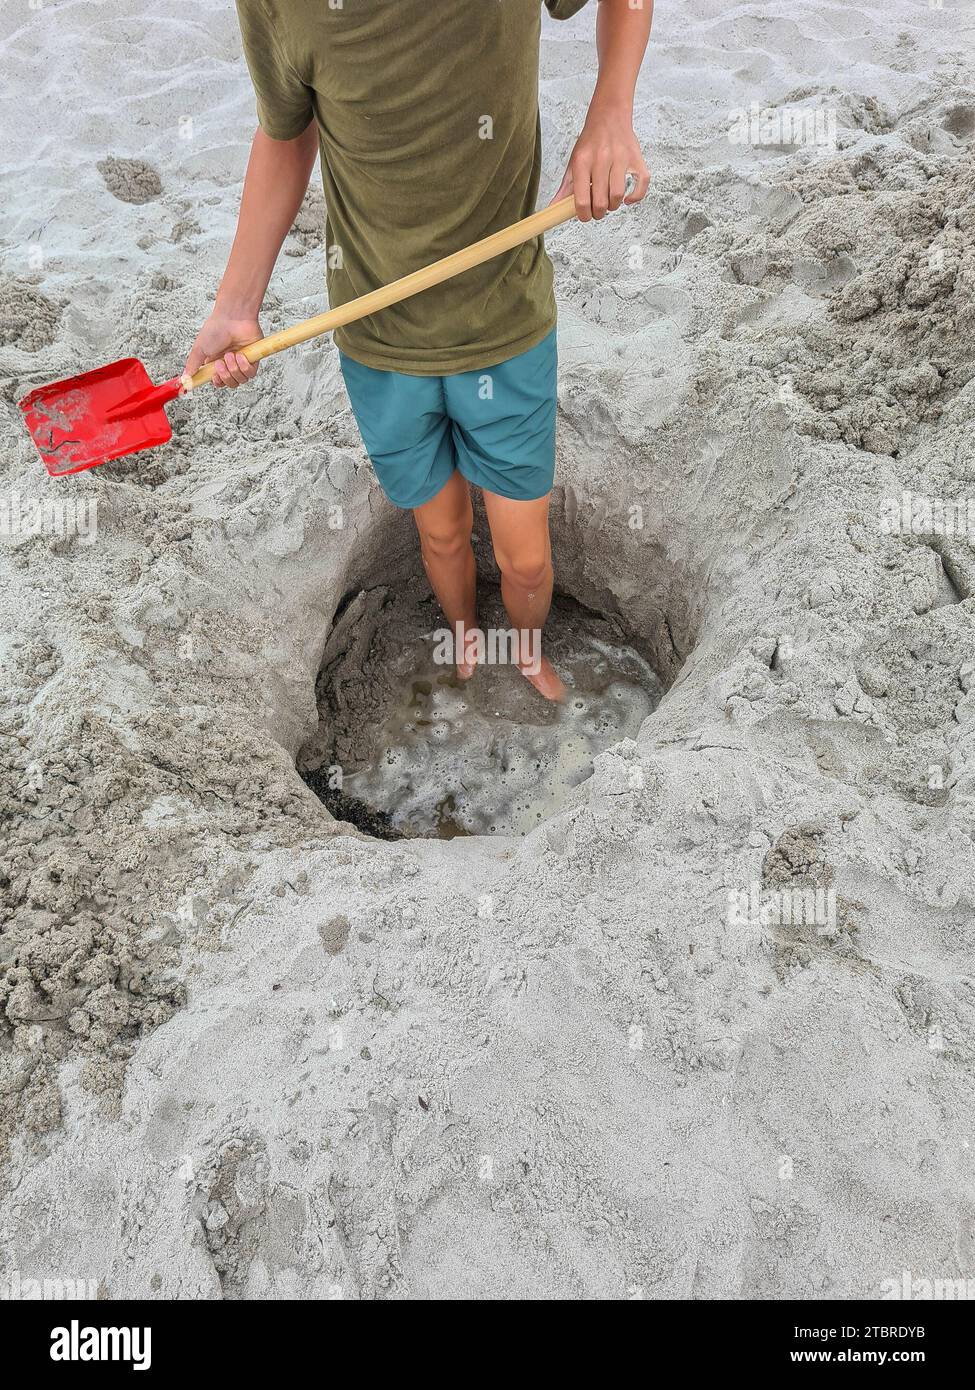 Germania, Meclemburgo-Pomerania occidentale, penisola Fischland-Darß-Zingst, Prerow, un adolescente si trova in un buco di sabbia sulla spiaggia con una pala in mano Foto Stock